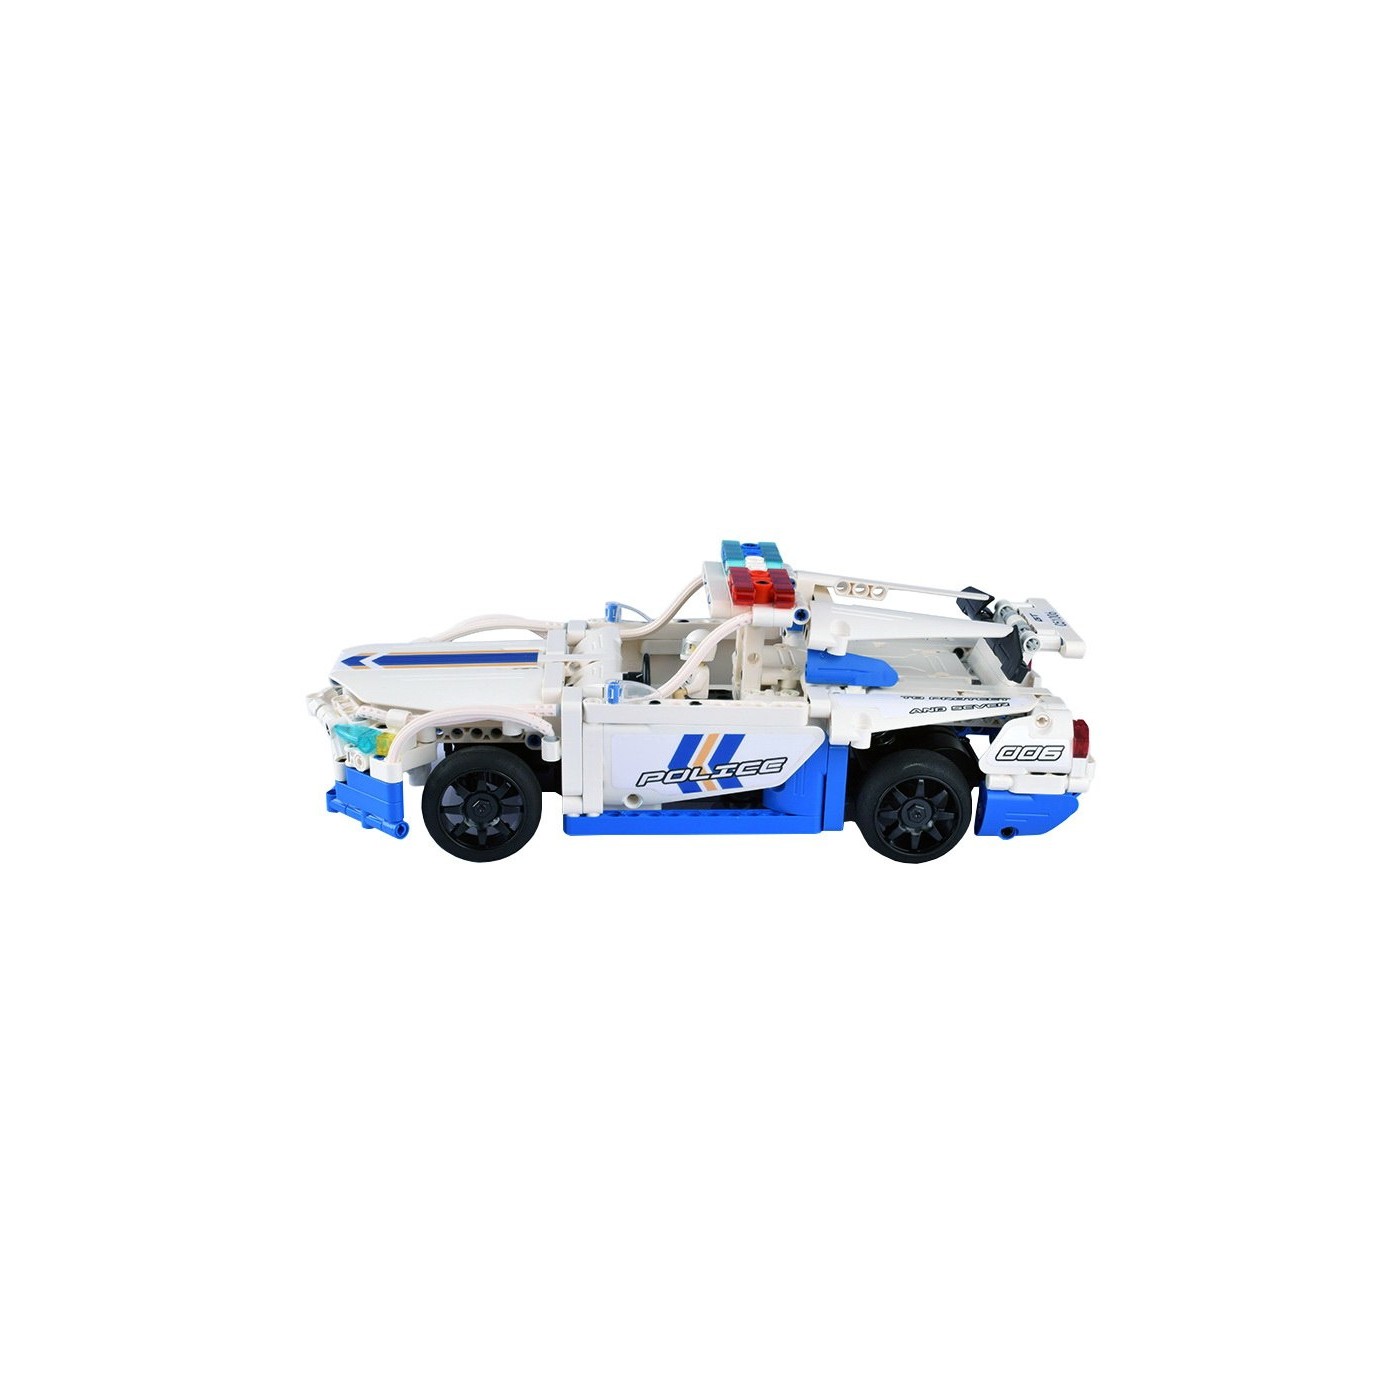 The pads R/C toy car Police 430 el EE